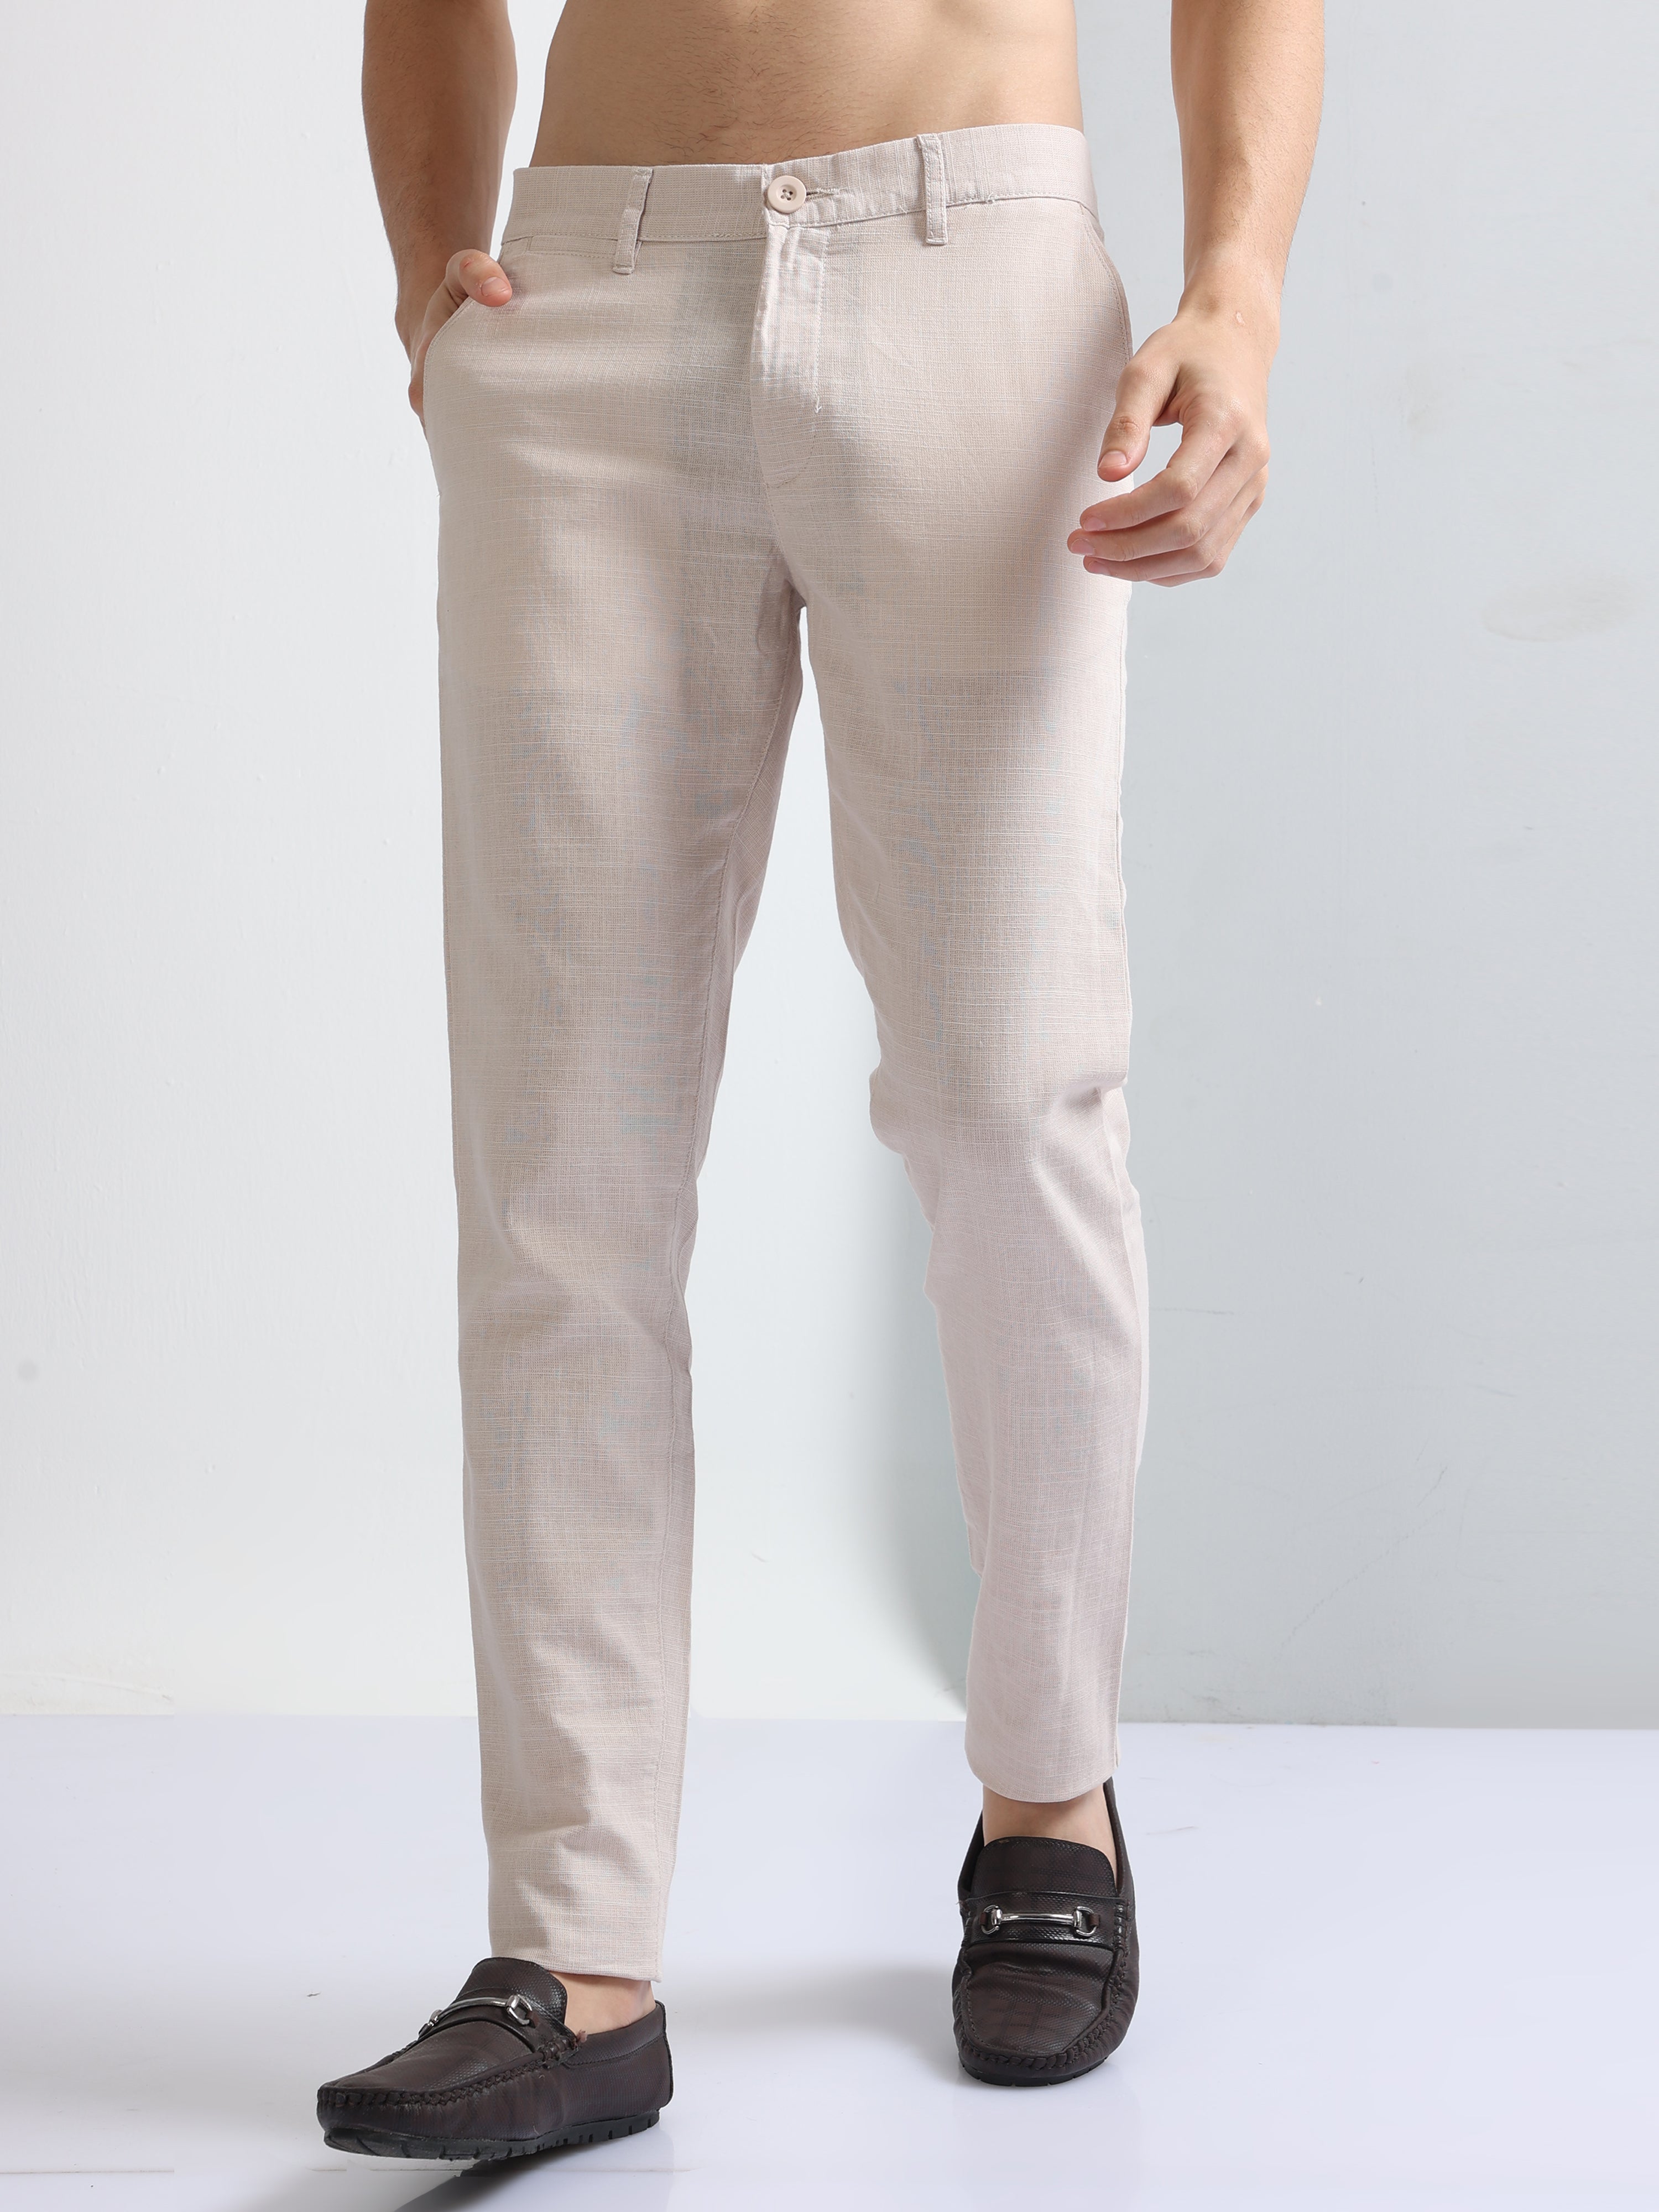 Buy Peach Premium Cotton-Linen Men's Trousers